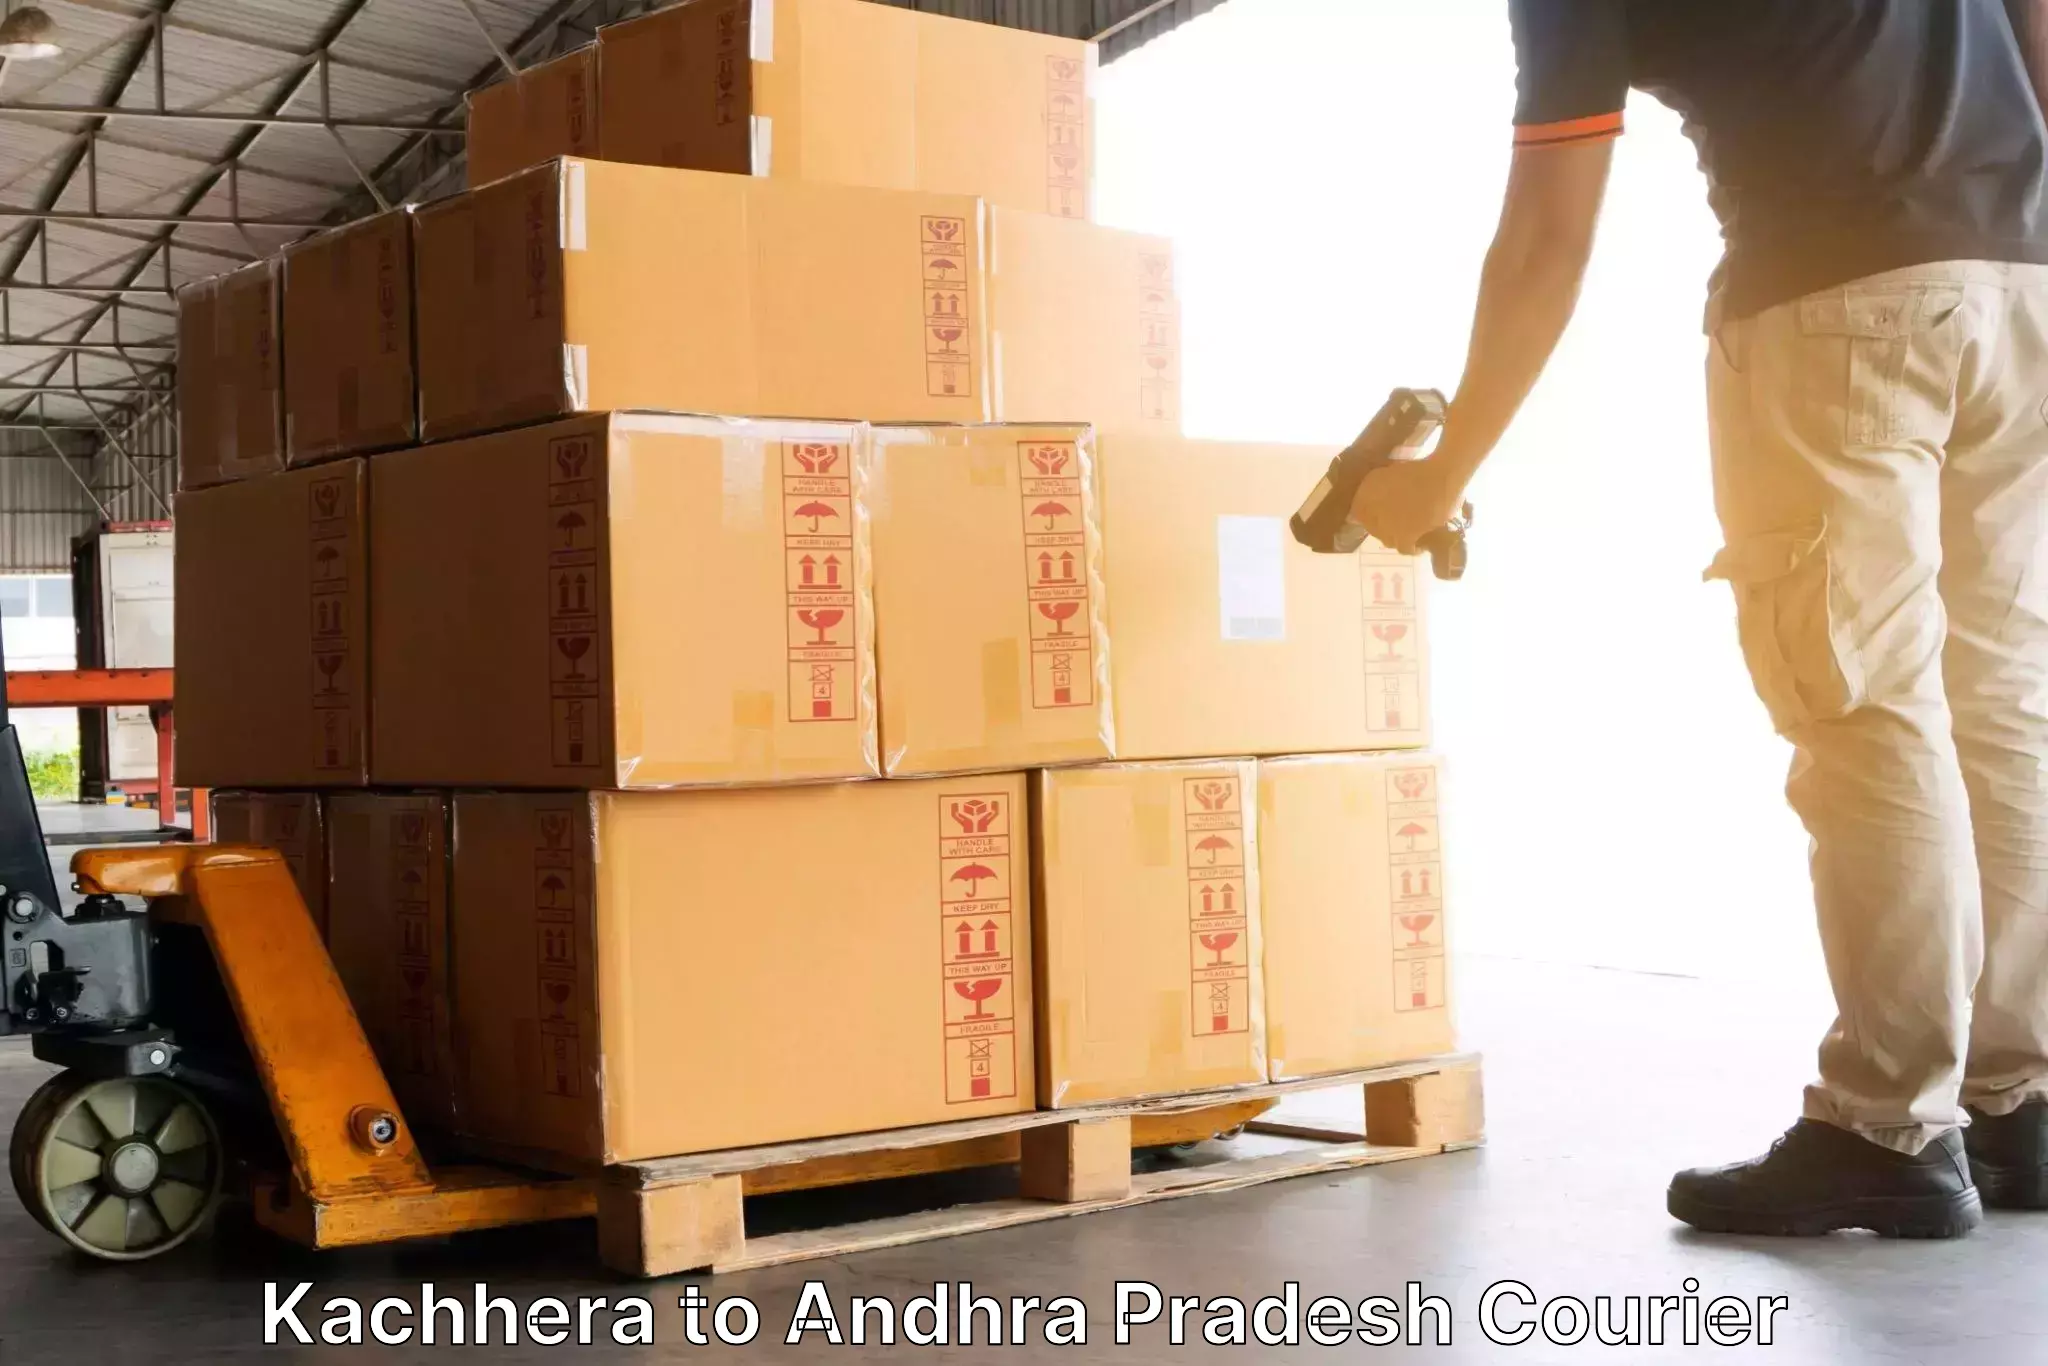 Global courier networks Kachhera to Kadapa